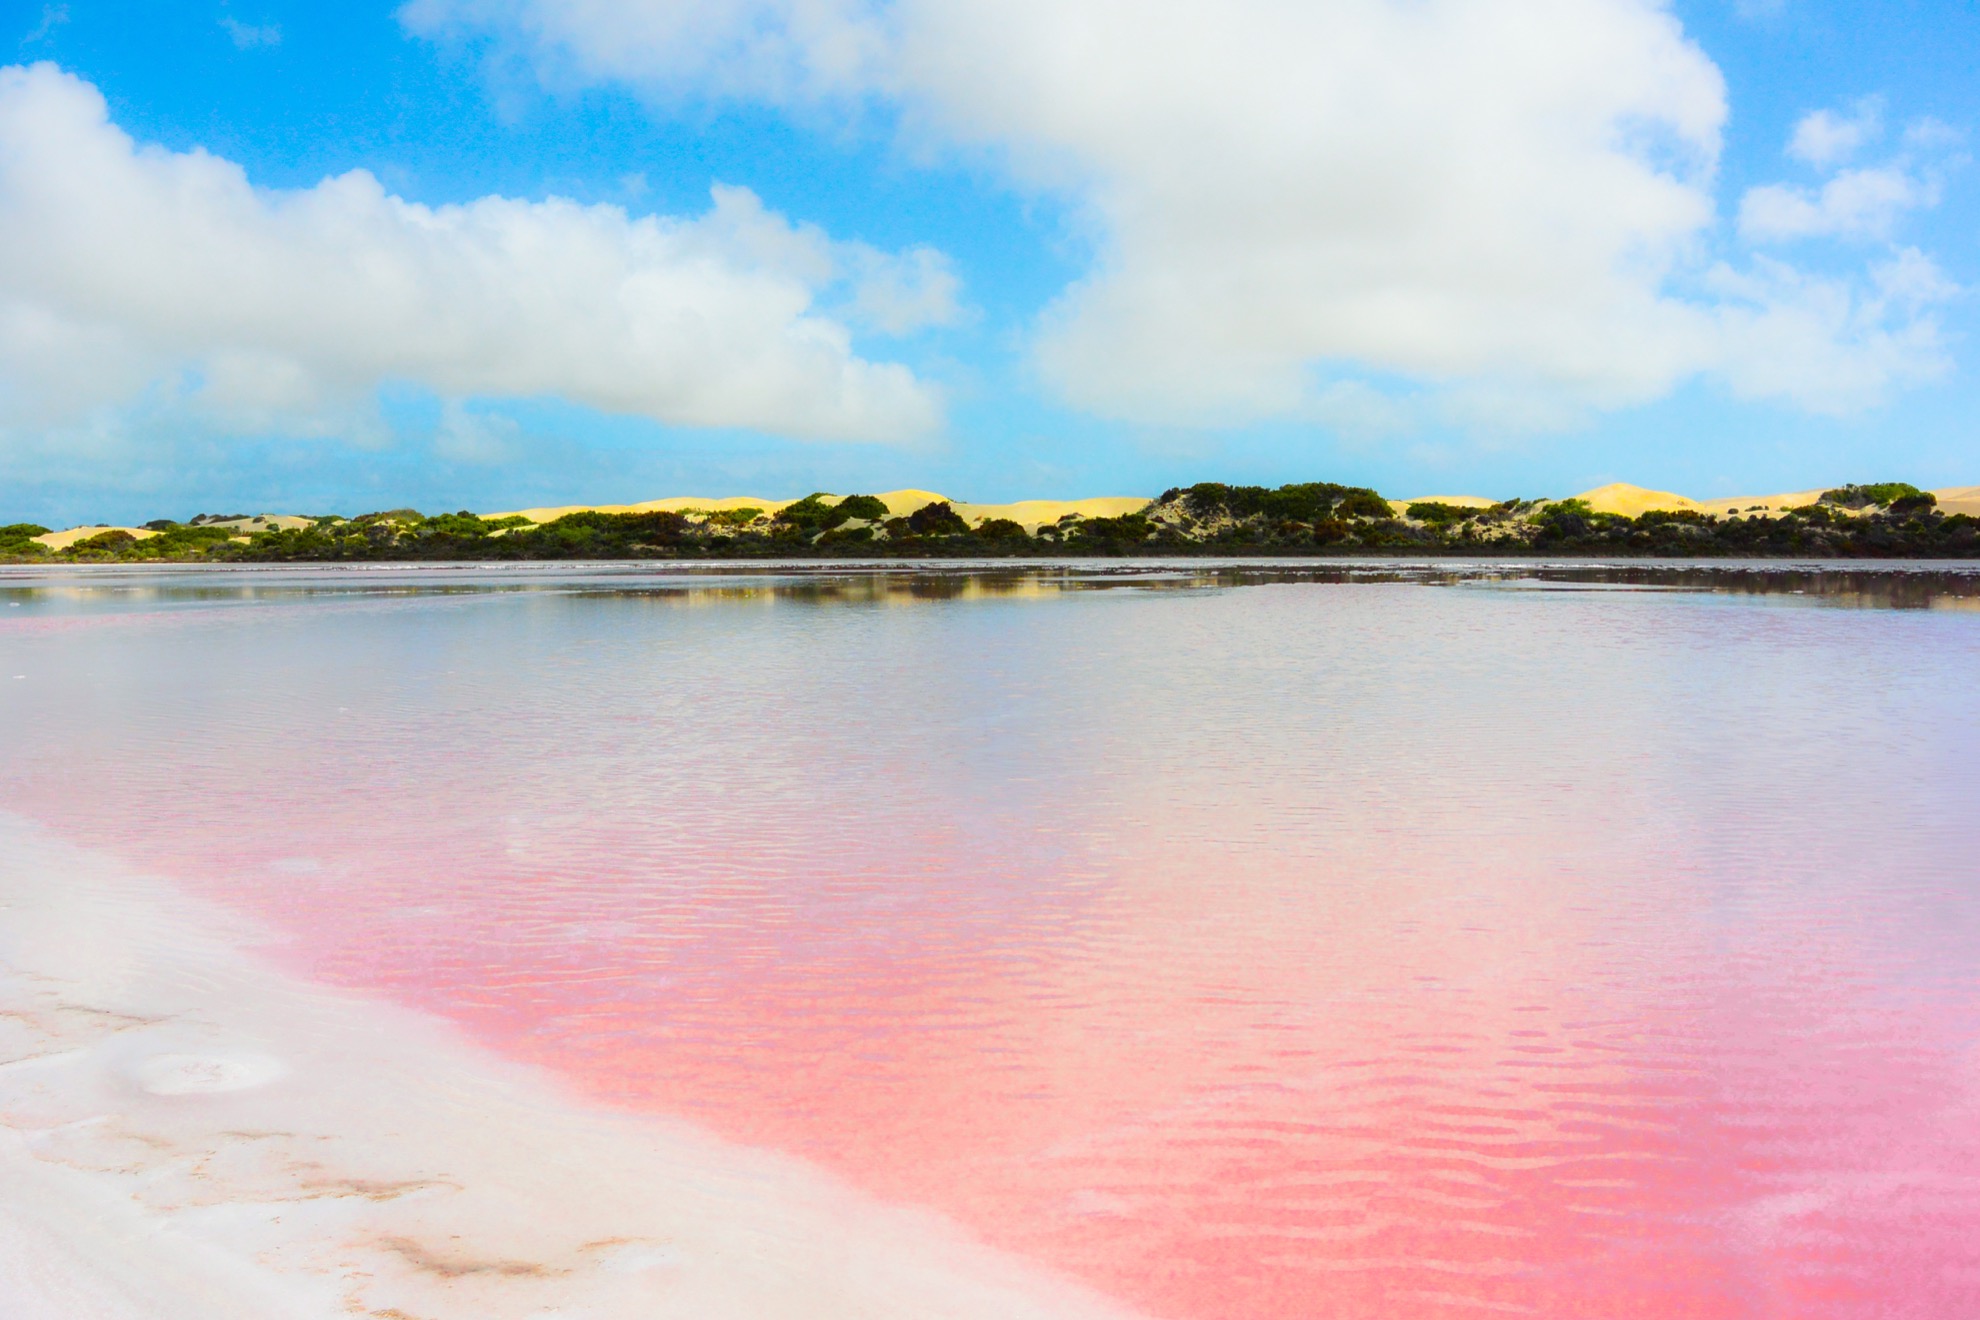 Cómo ver el increíble lago Pink Bubblegum Pink de Australia - 161